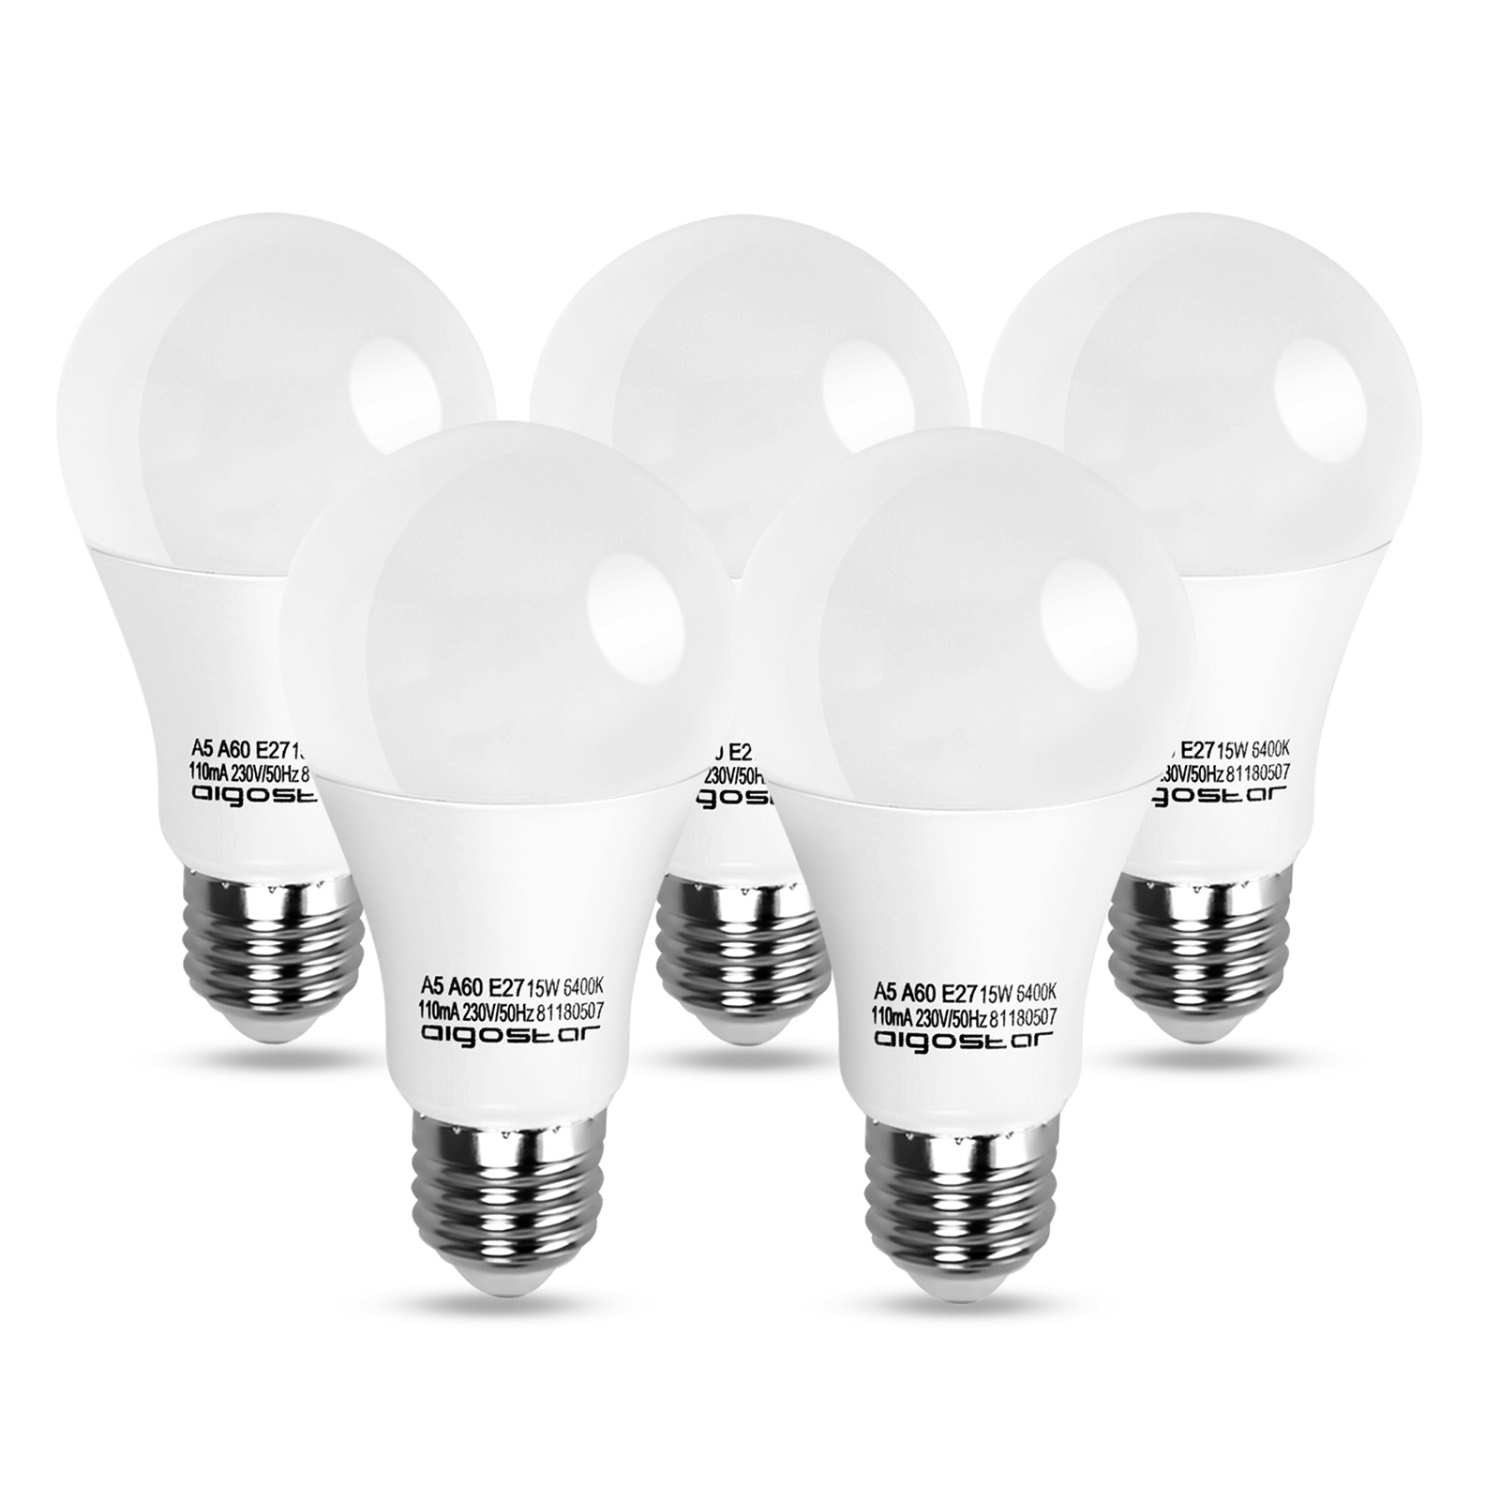 Aigostar LED lamp A5 A60 15W - E27 Fitting - Daglicht 6400K - 1200 lumen - Set van 5 stuks